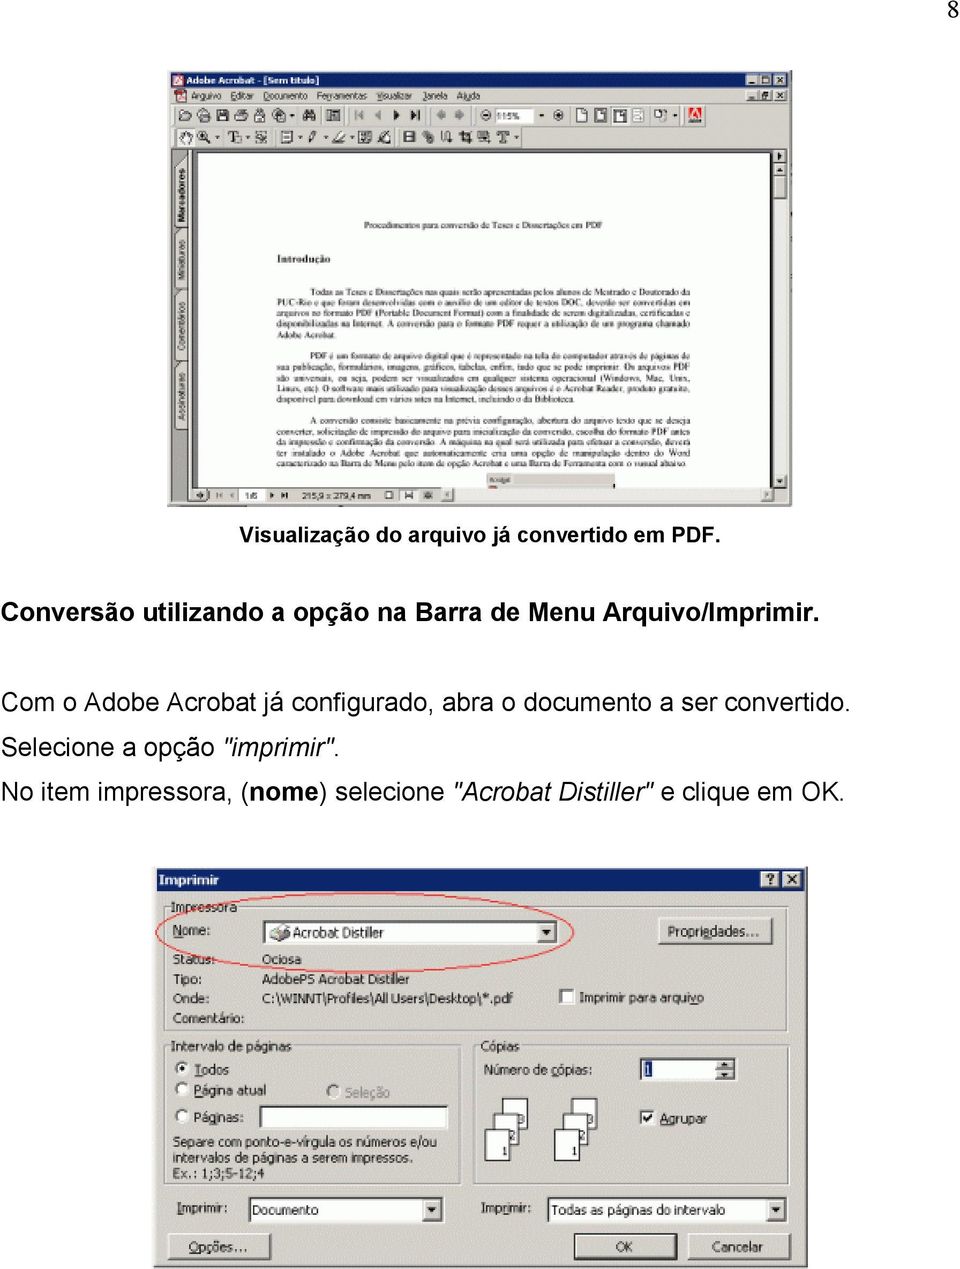 Com o Adobe Acrobat já configurado, abra o documento a ser convertido.